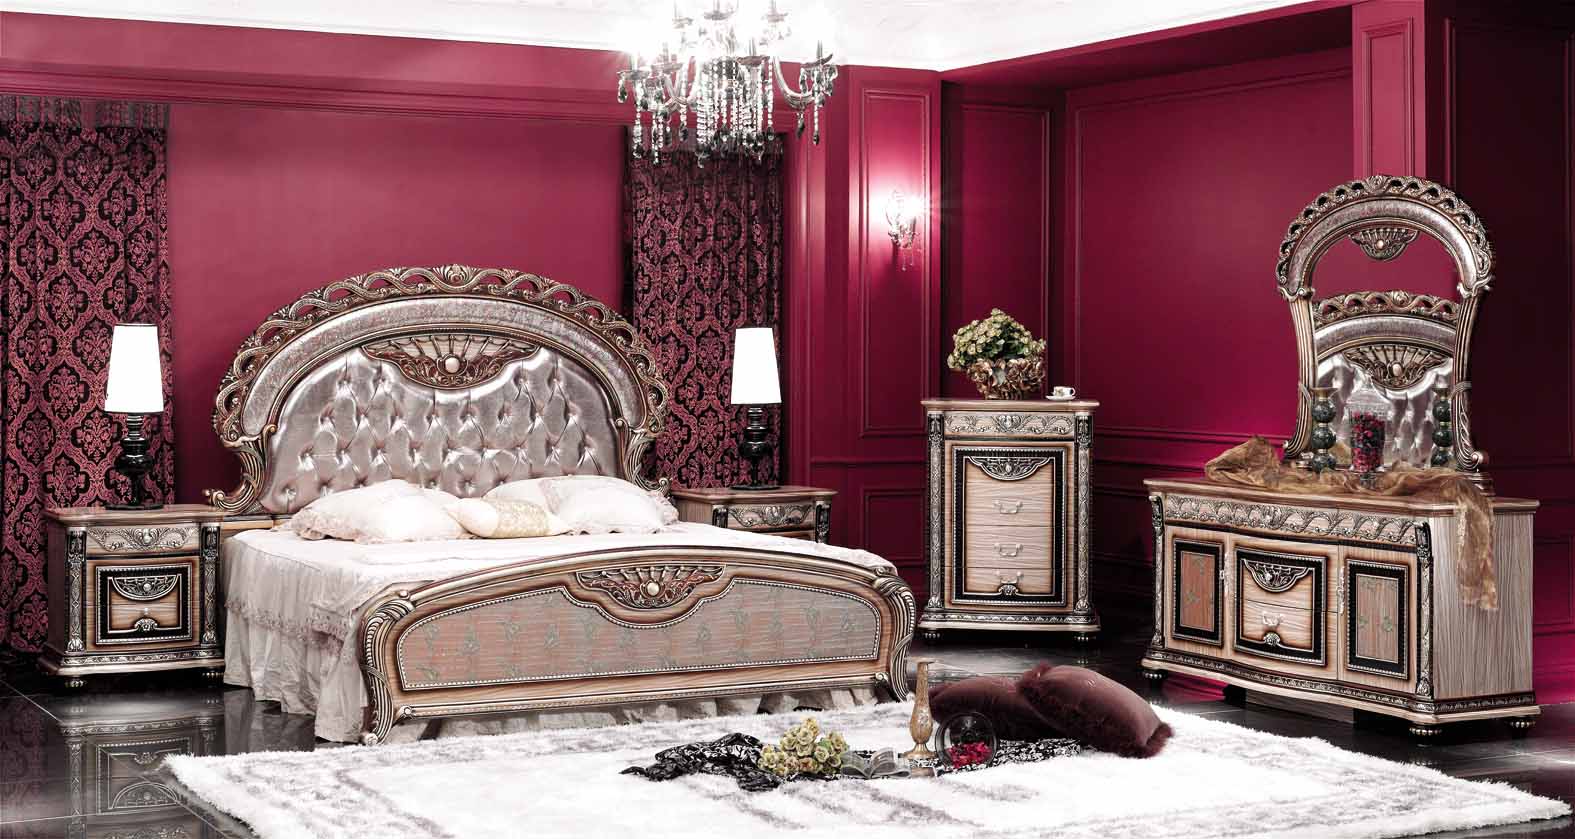 ديكورات كلاسيكية رومانسية لغرف النوم